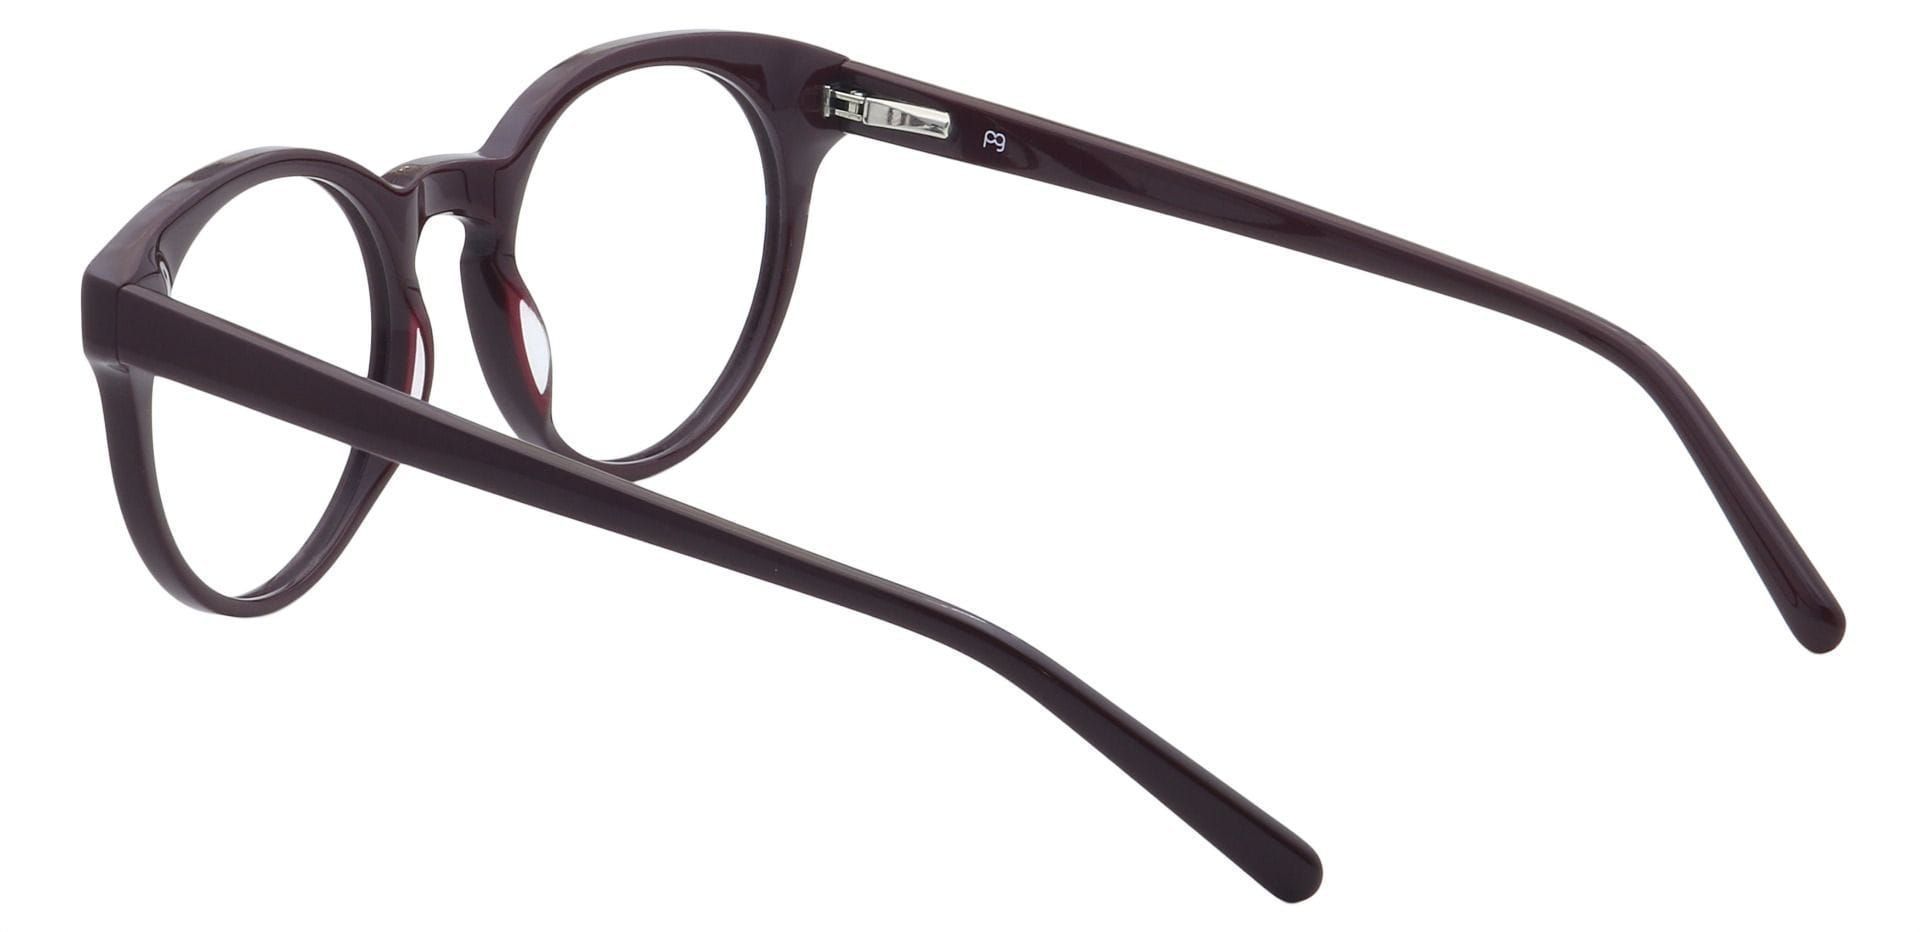 Spright Round Eyeglasses Frame - Wine